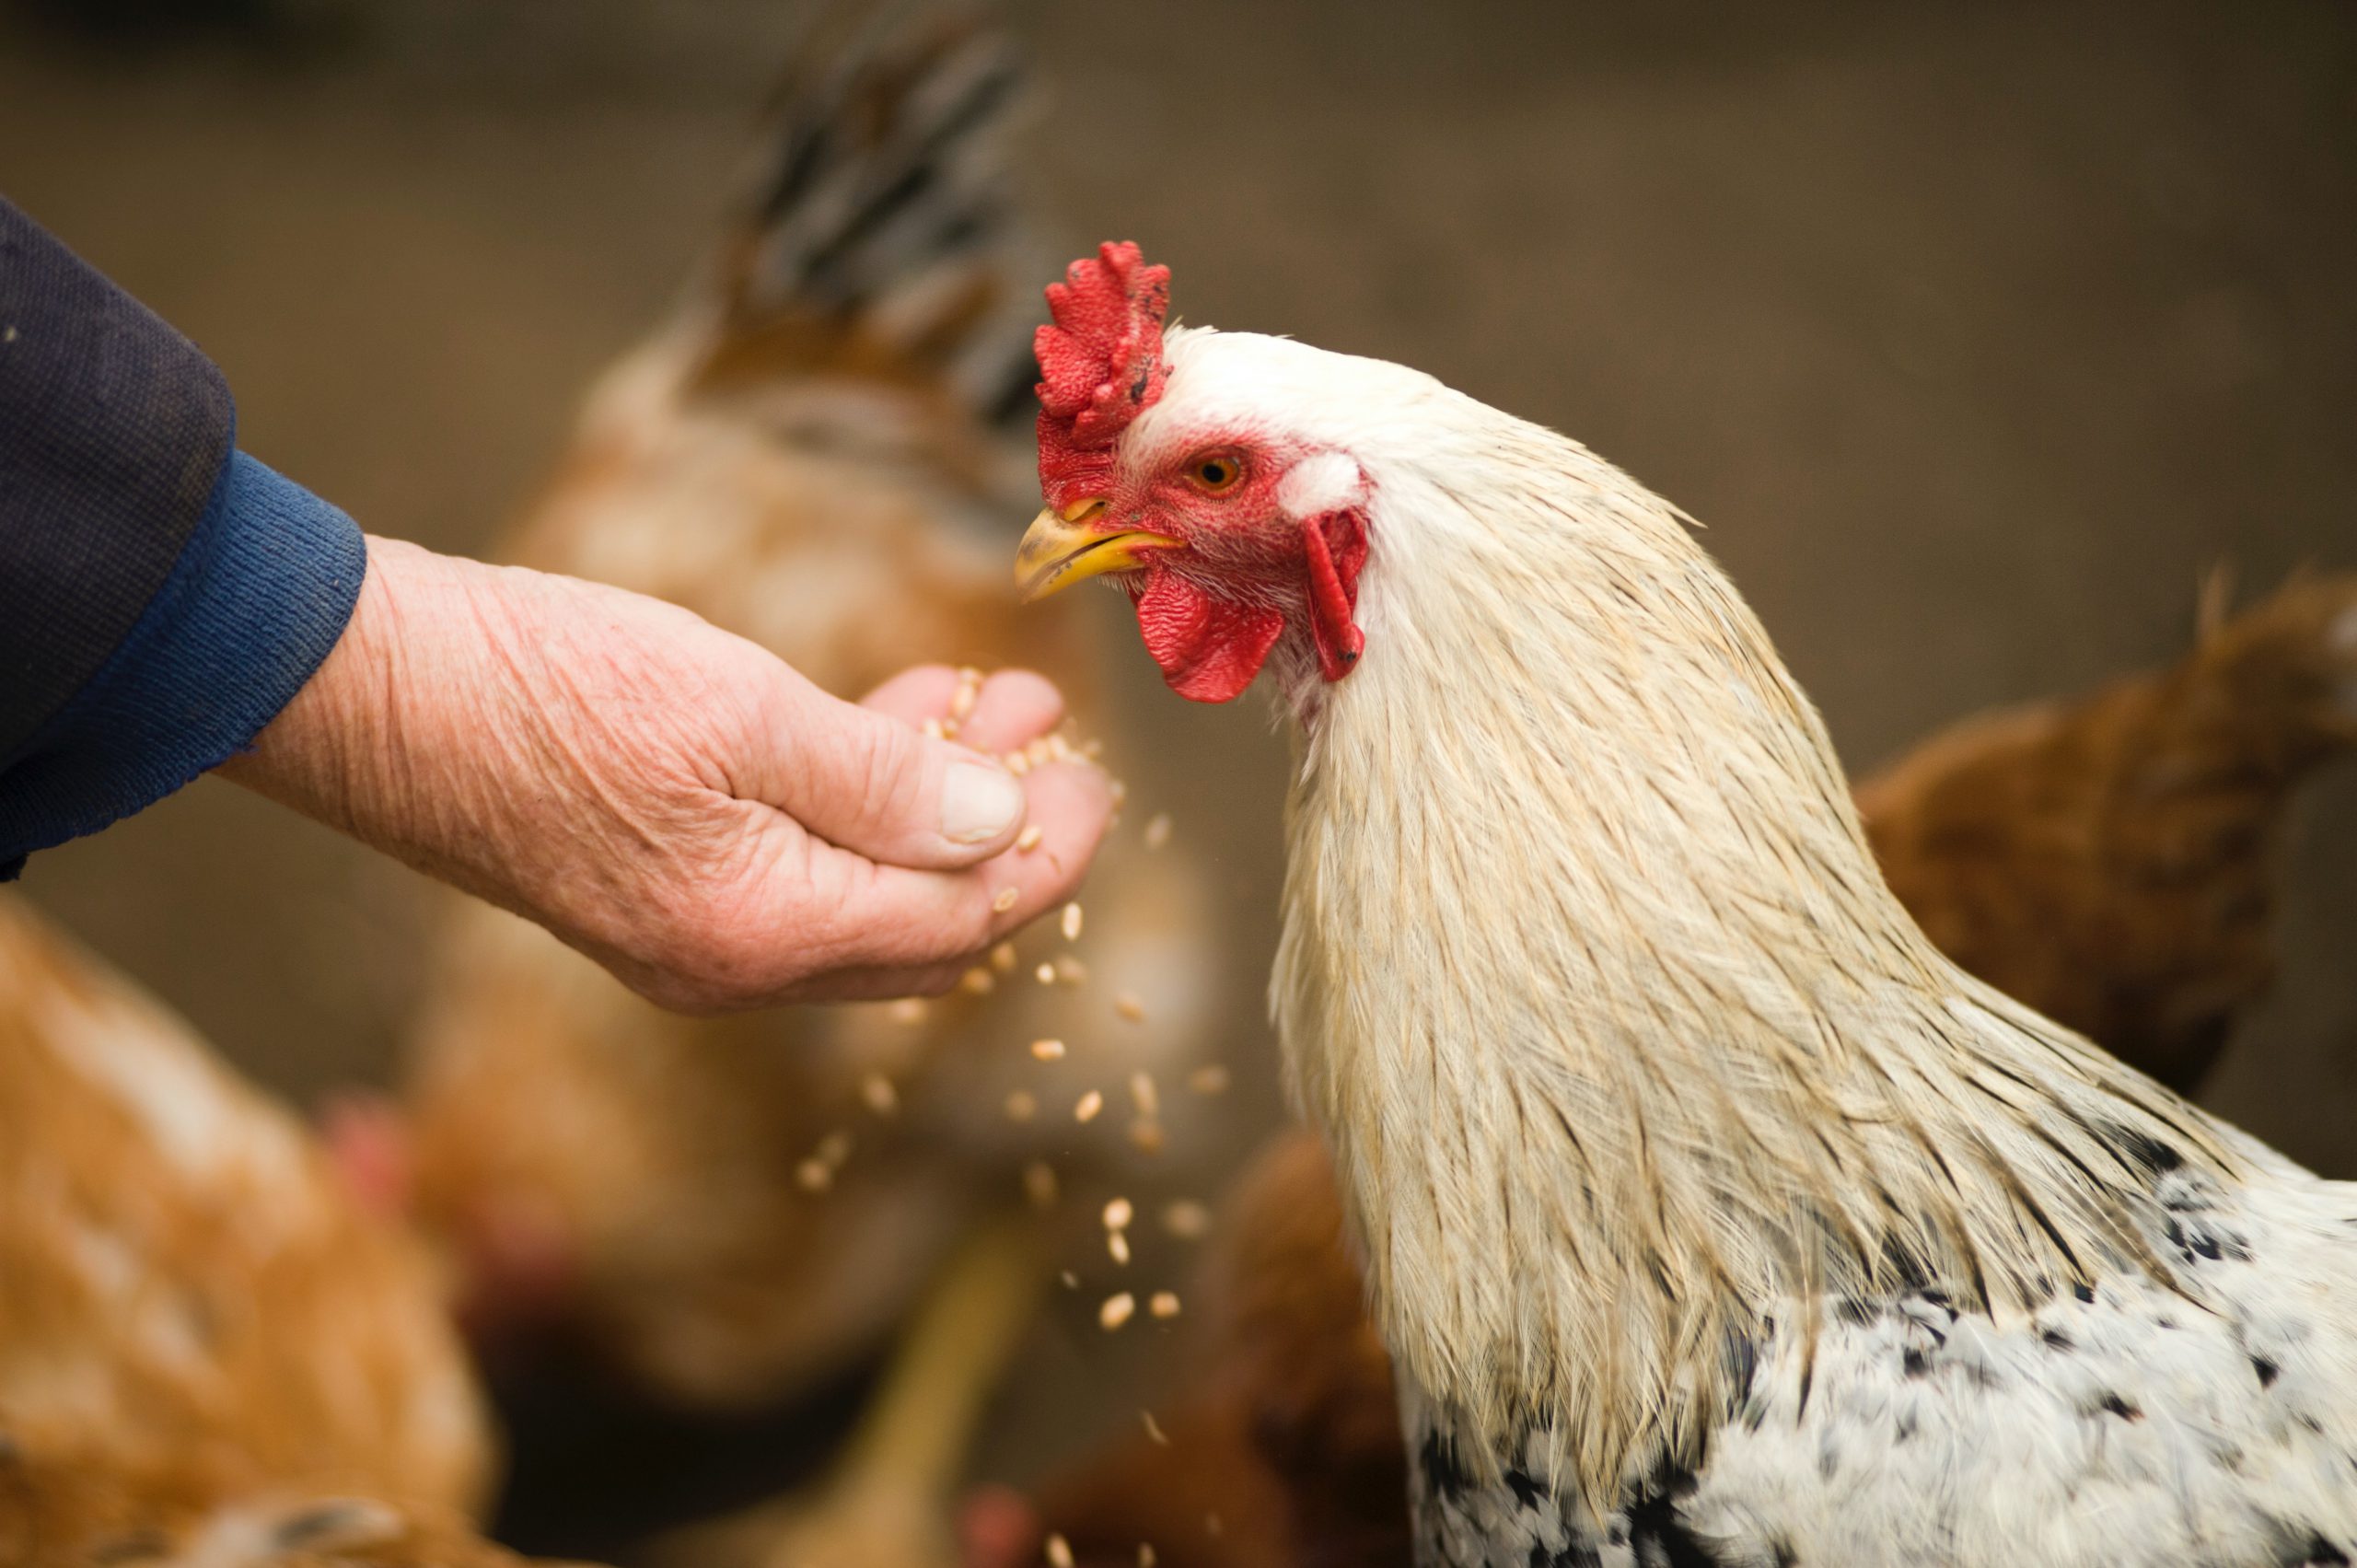 Carnea de pui organică se obține din păsări hrănite natural